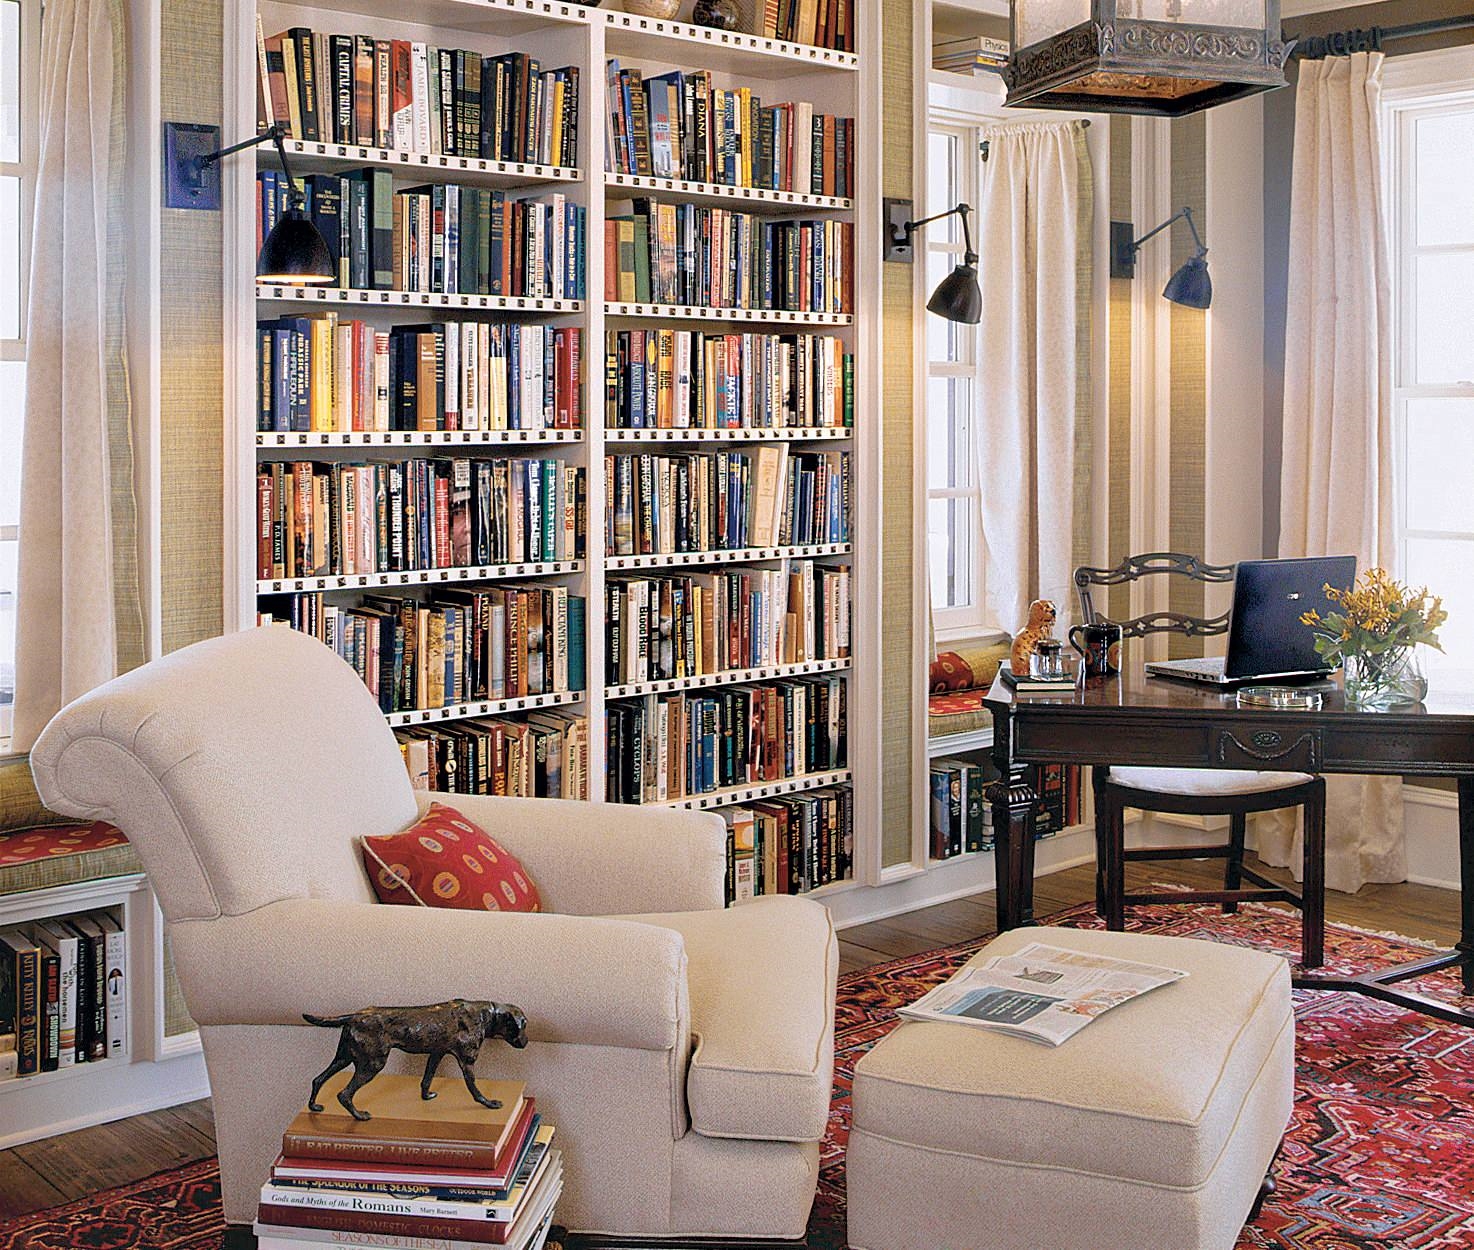 Основные достоинства кабинета - красочная библиотека, мягкие тона текстиля, приятное освещение